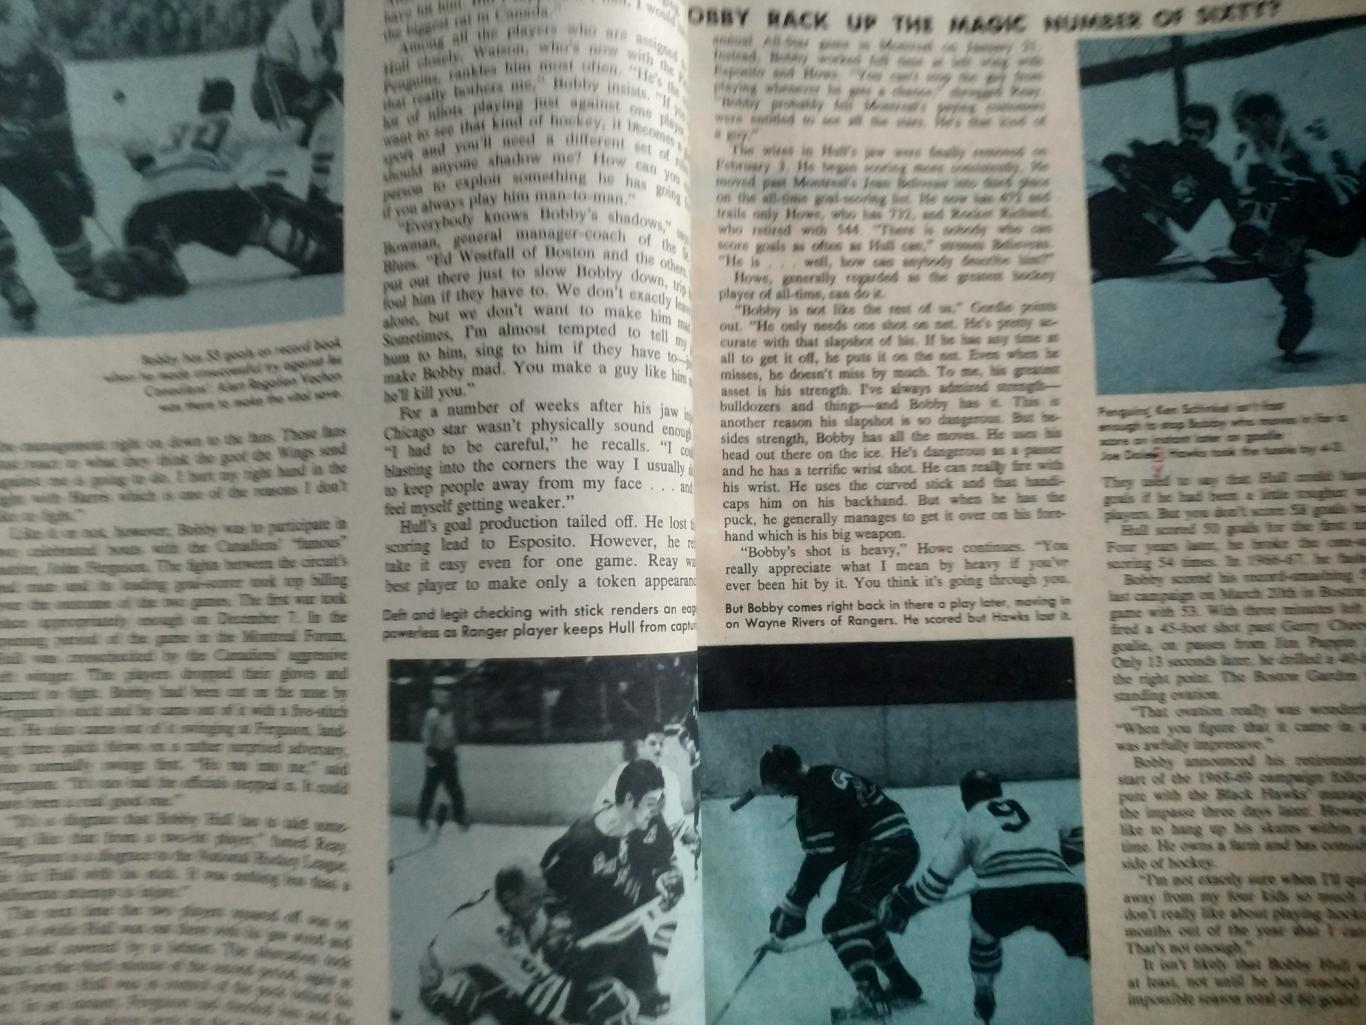 ЖУРНАЛ СПРАВОЧНИК НХЛ СПОРТ РЕВЬЮ ПРО ХОКЕЕЙ 1969-70 NHL SPORT REVIEW PRO HOCKEY 2